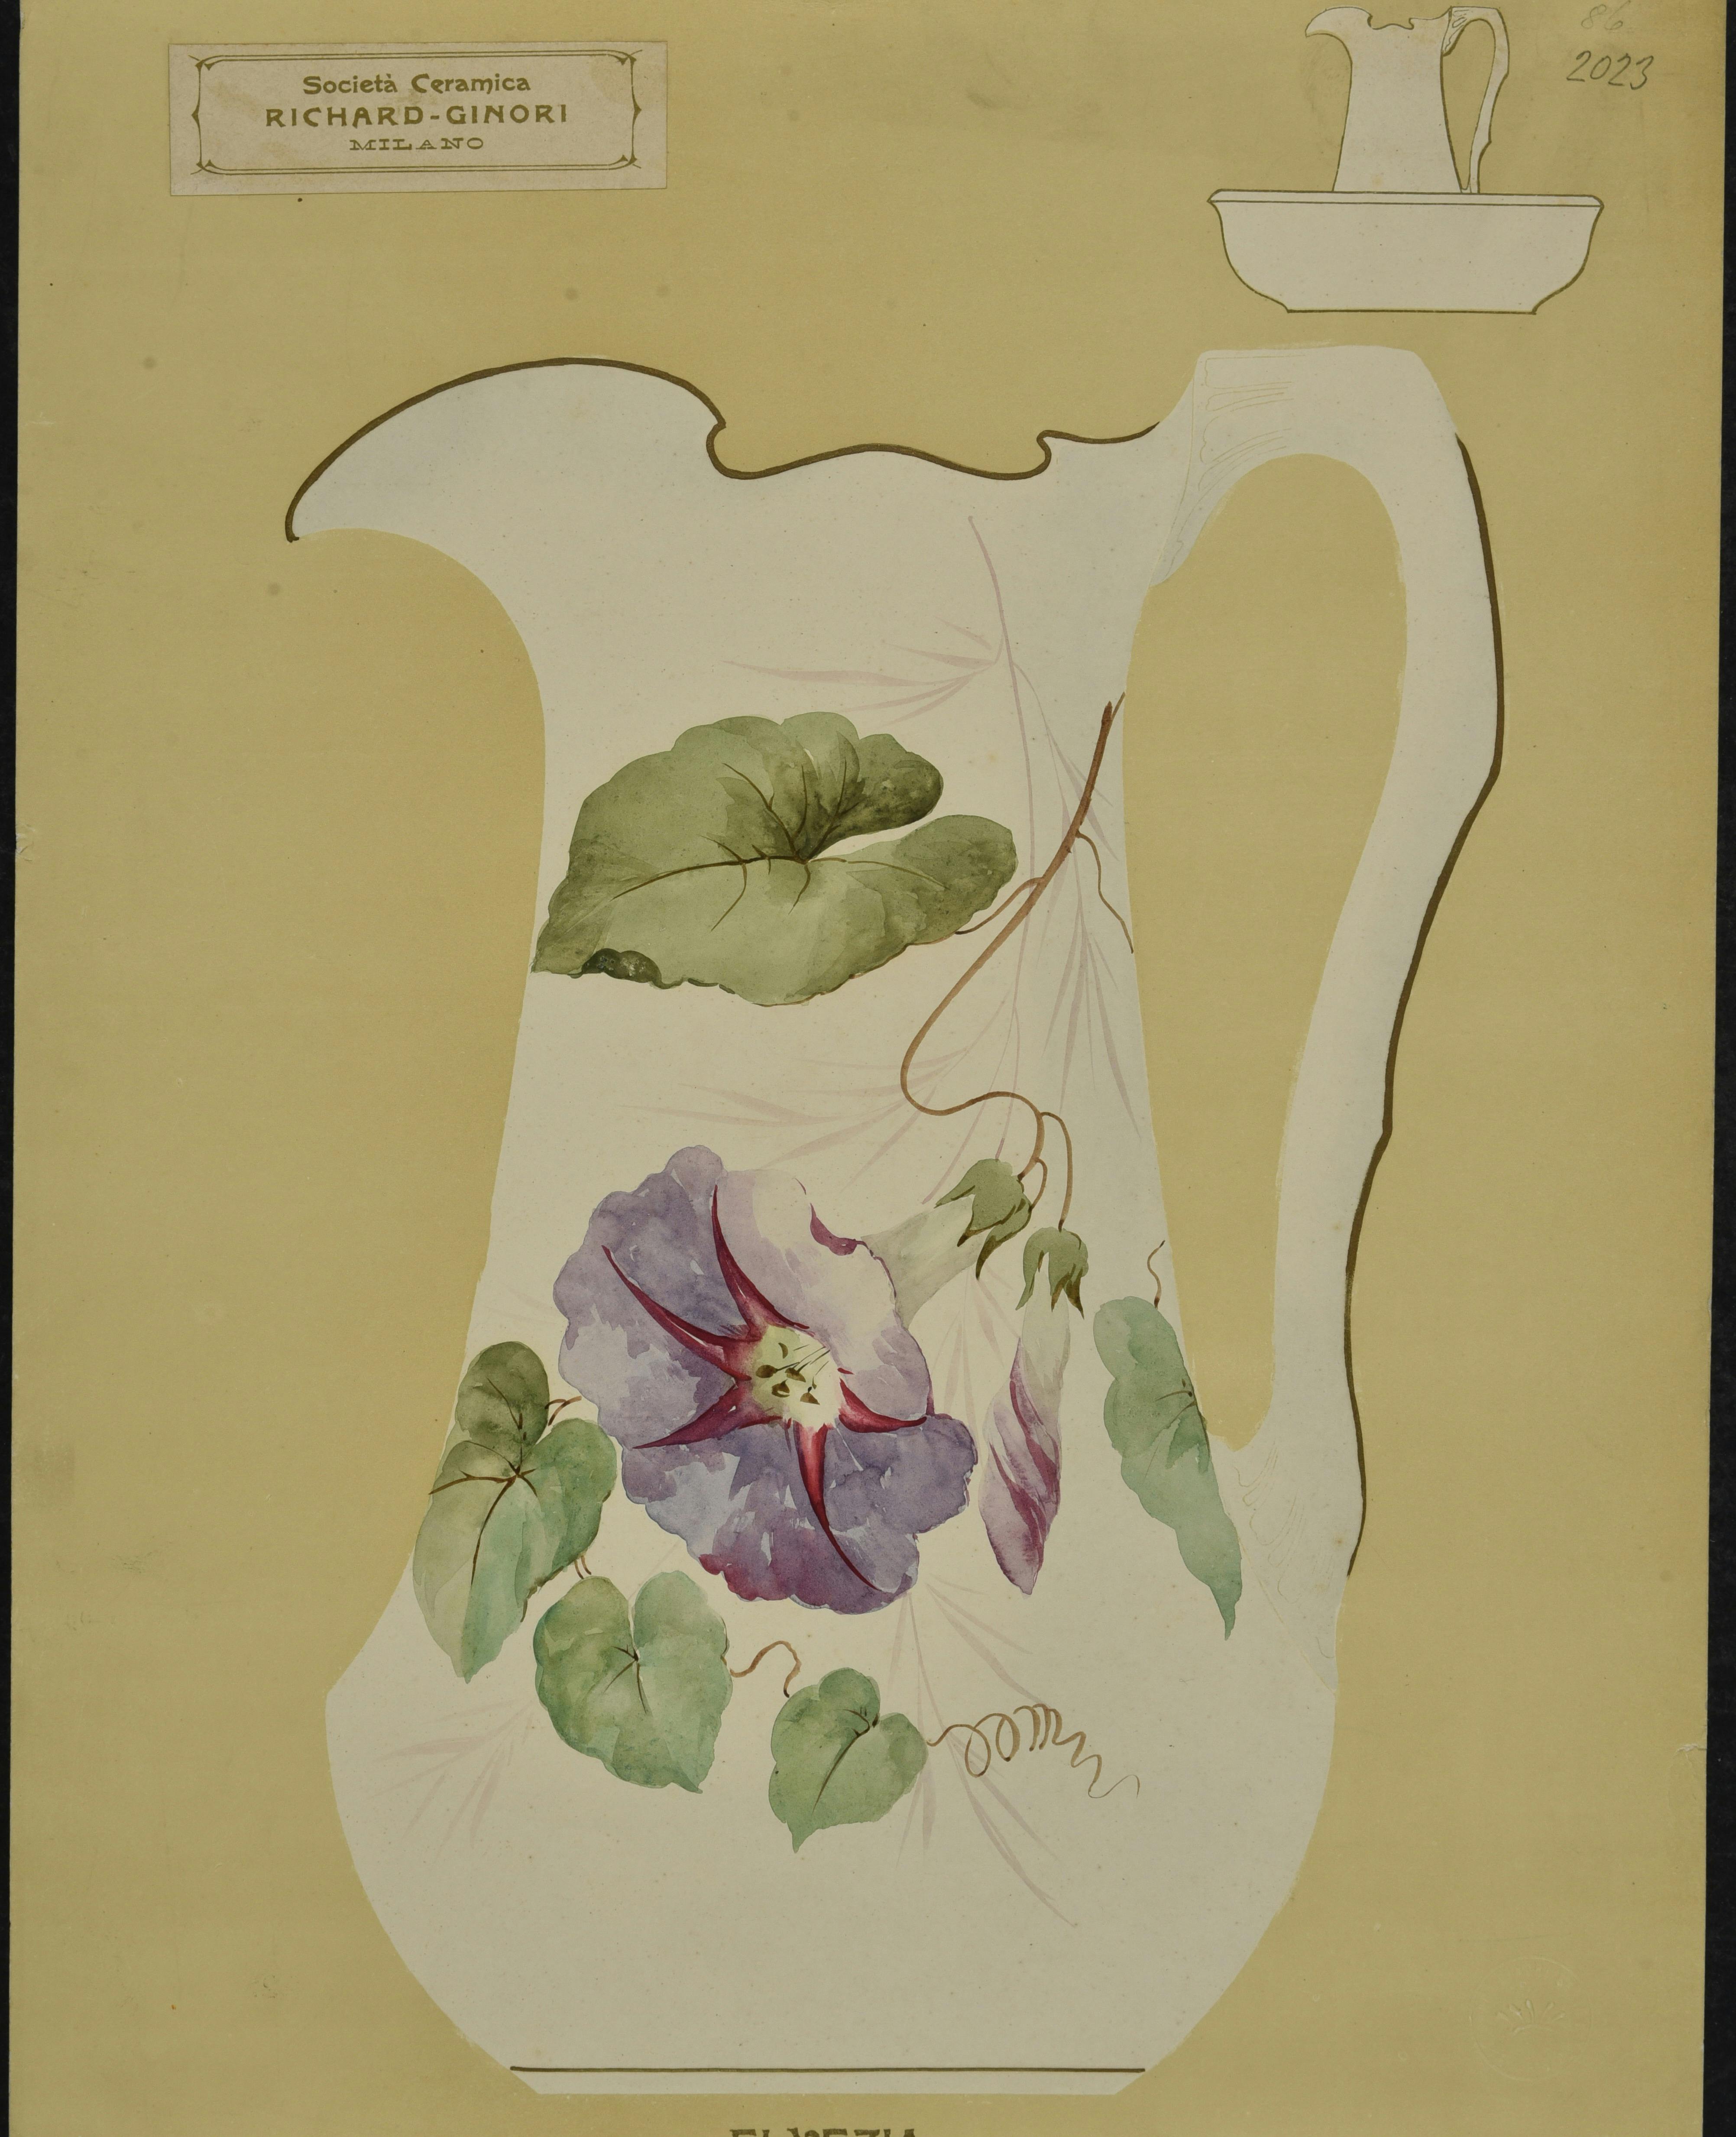 Pagina di catalogo con la sagoma bianca di un vaso decorata con fiori e foglie colorati